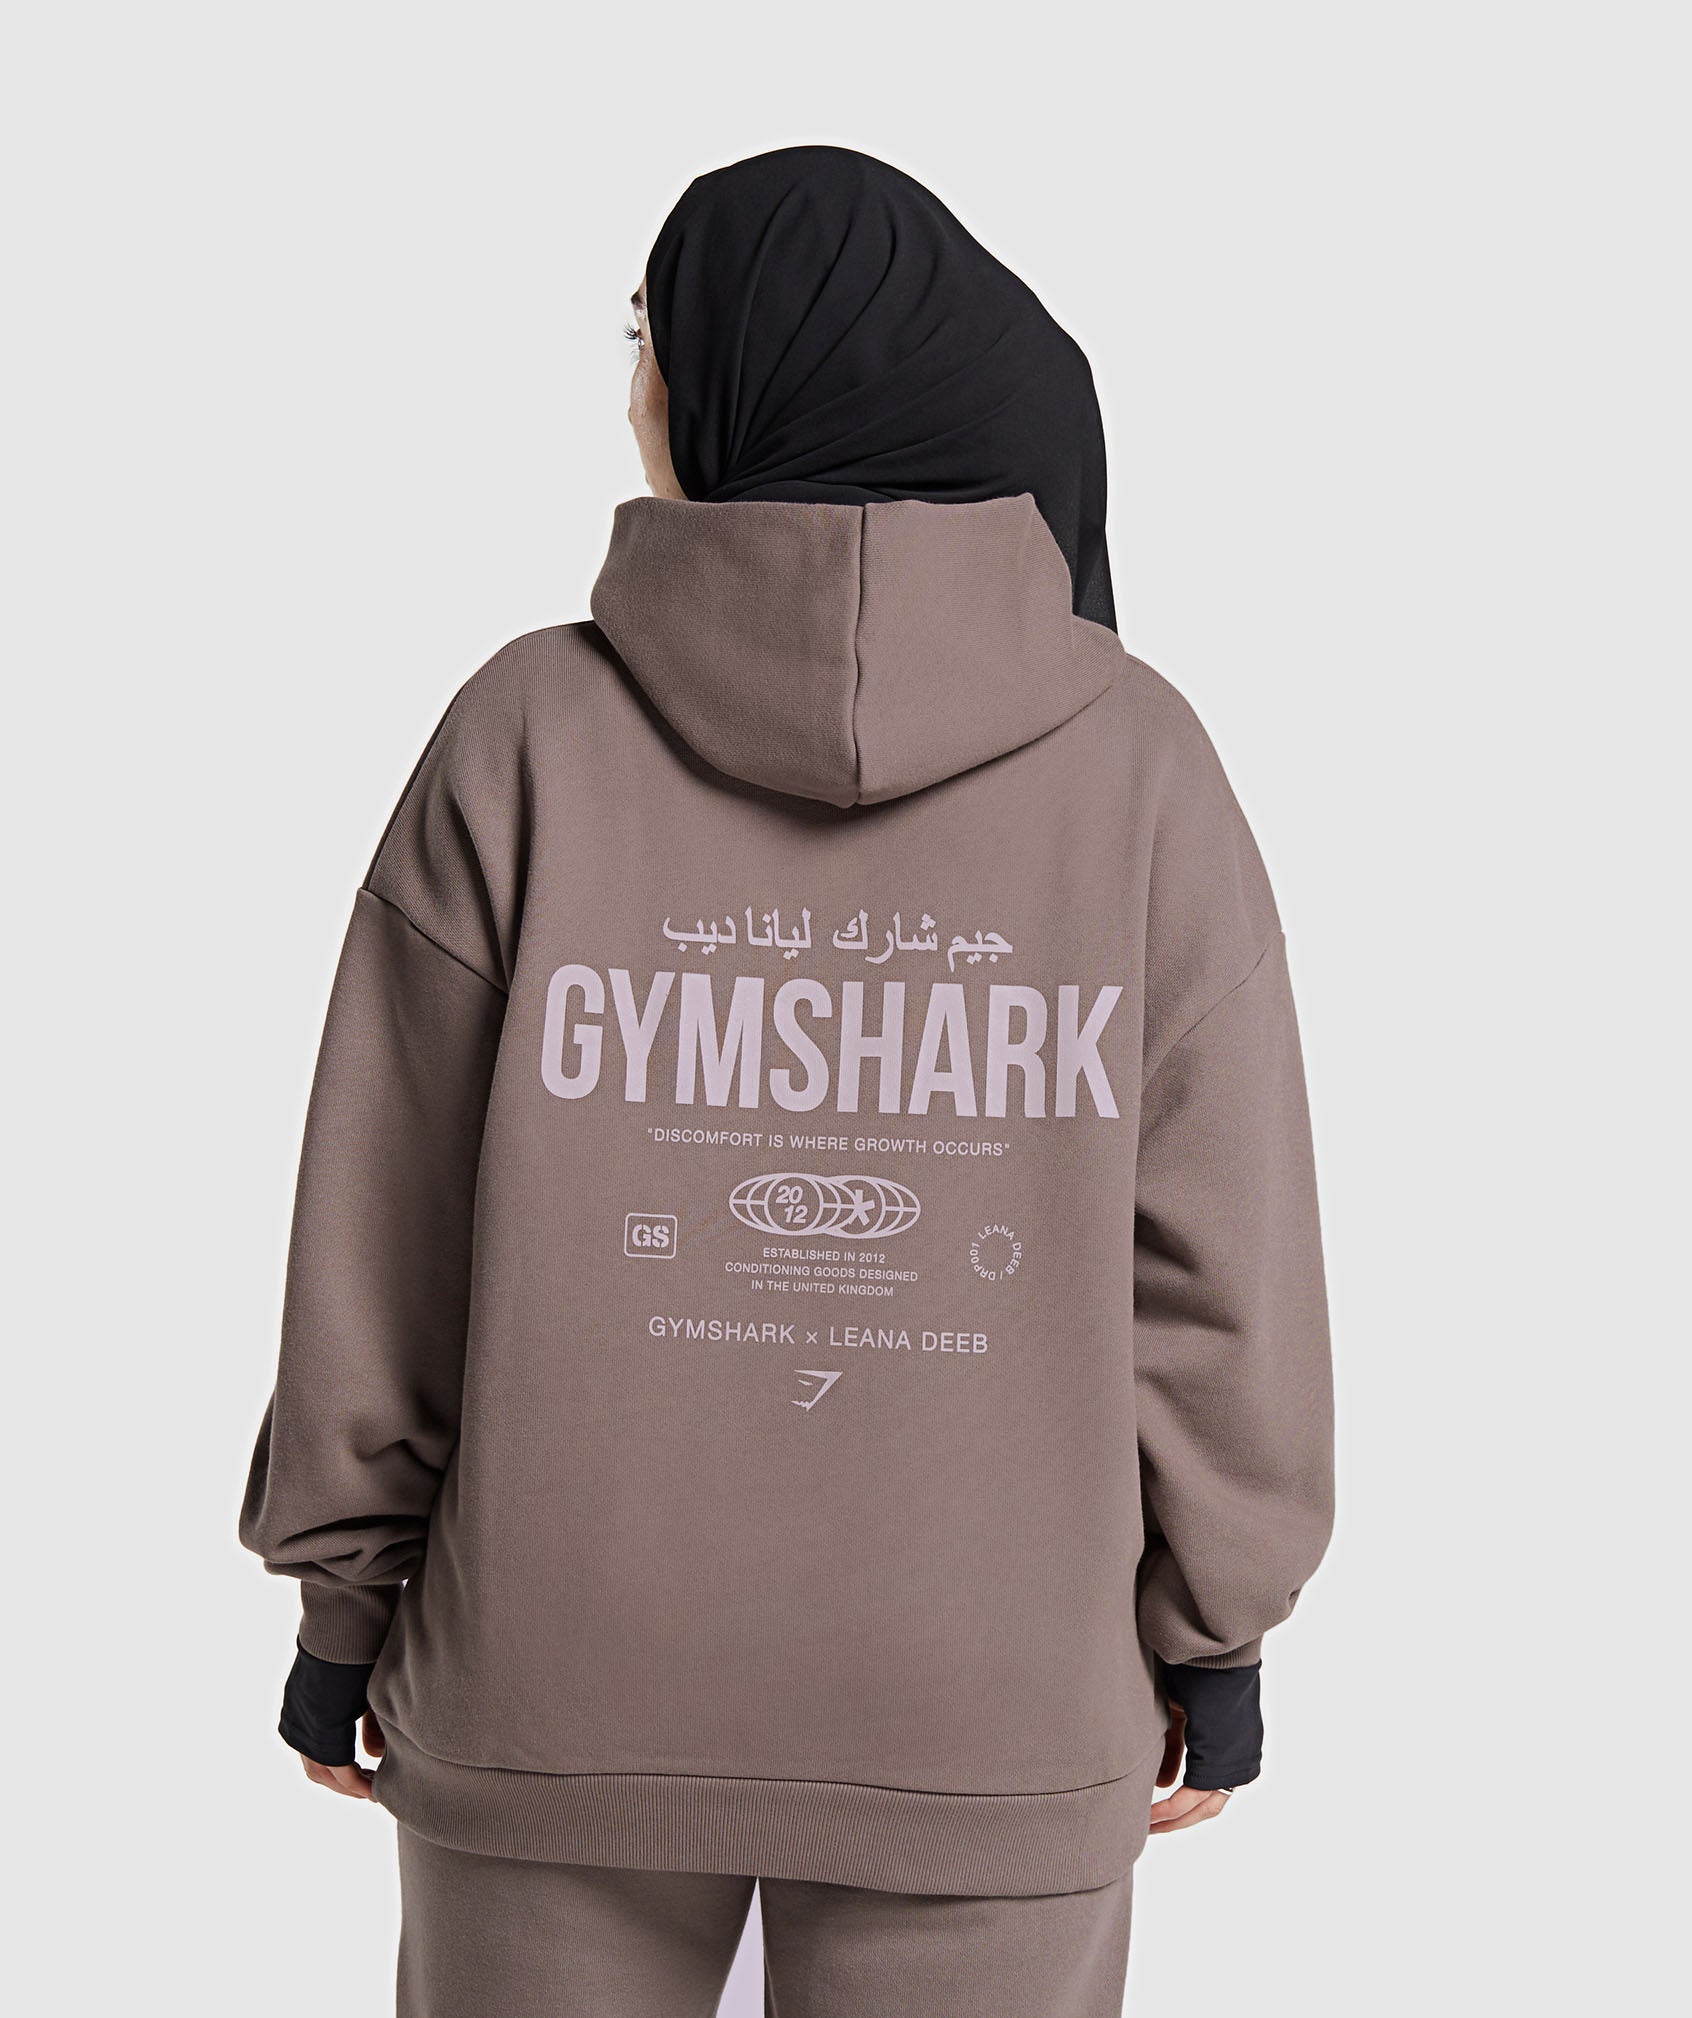 Gymshark Pause Knitwear Hoodie - Black/Onyx Grey